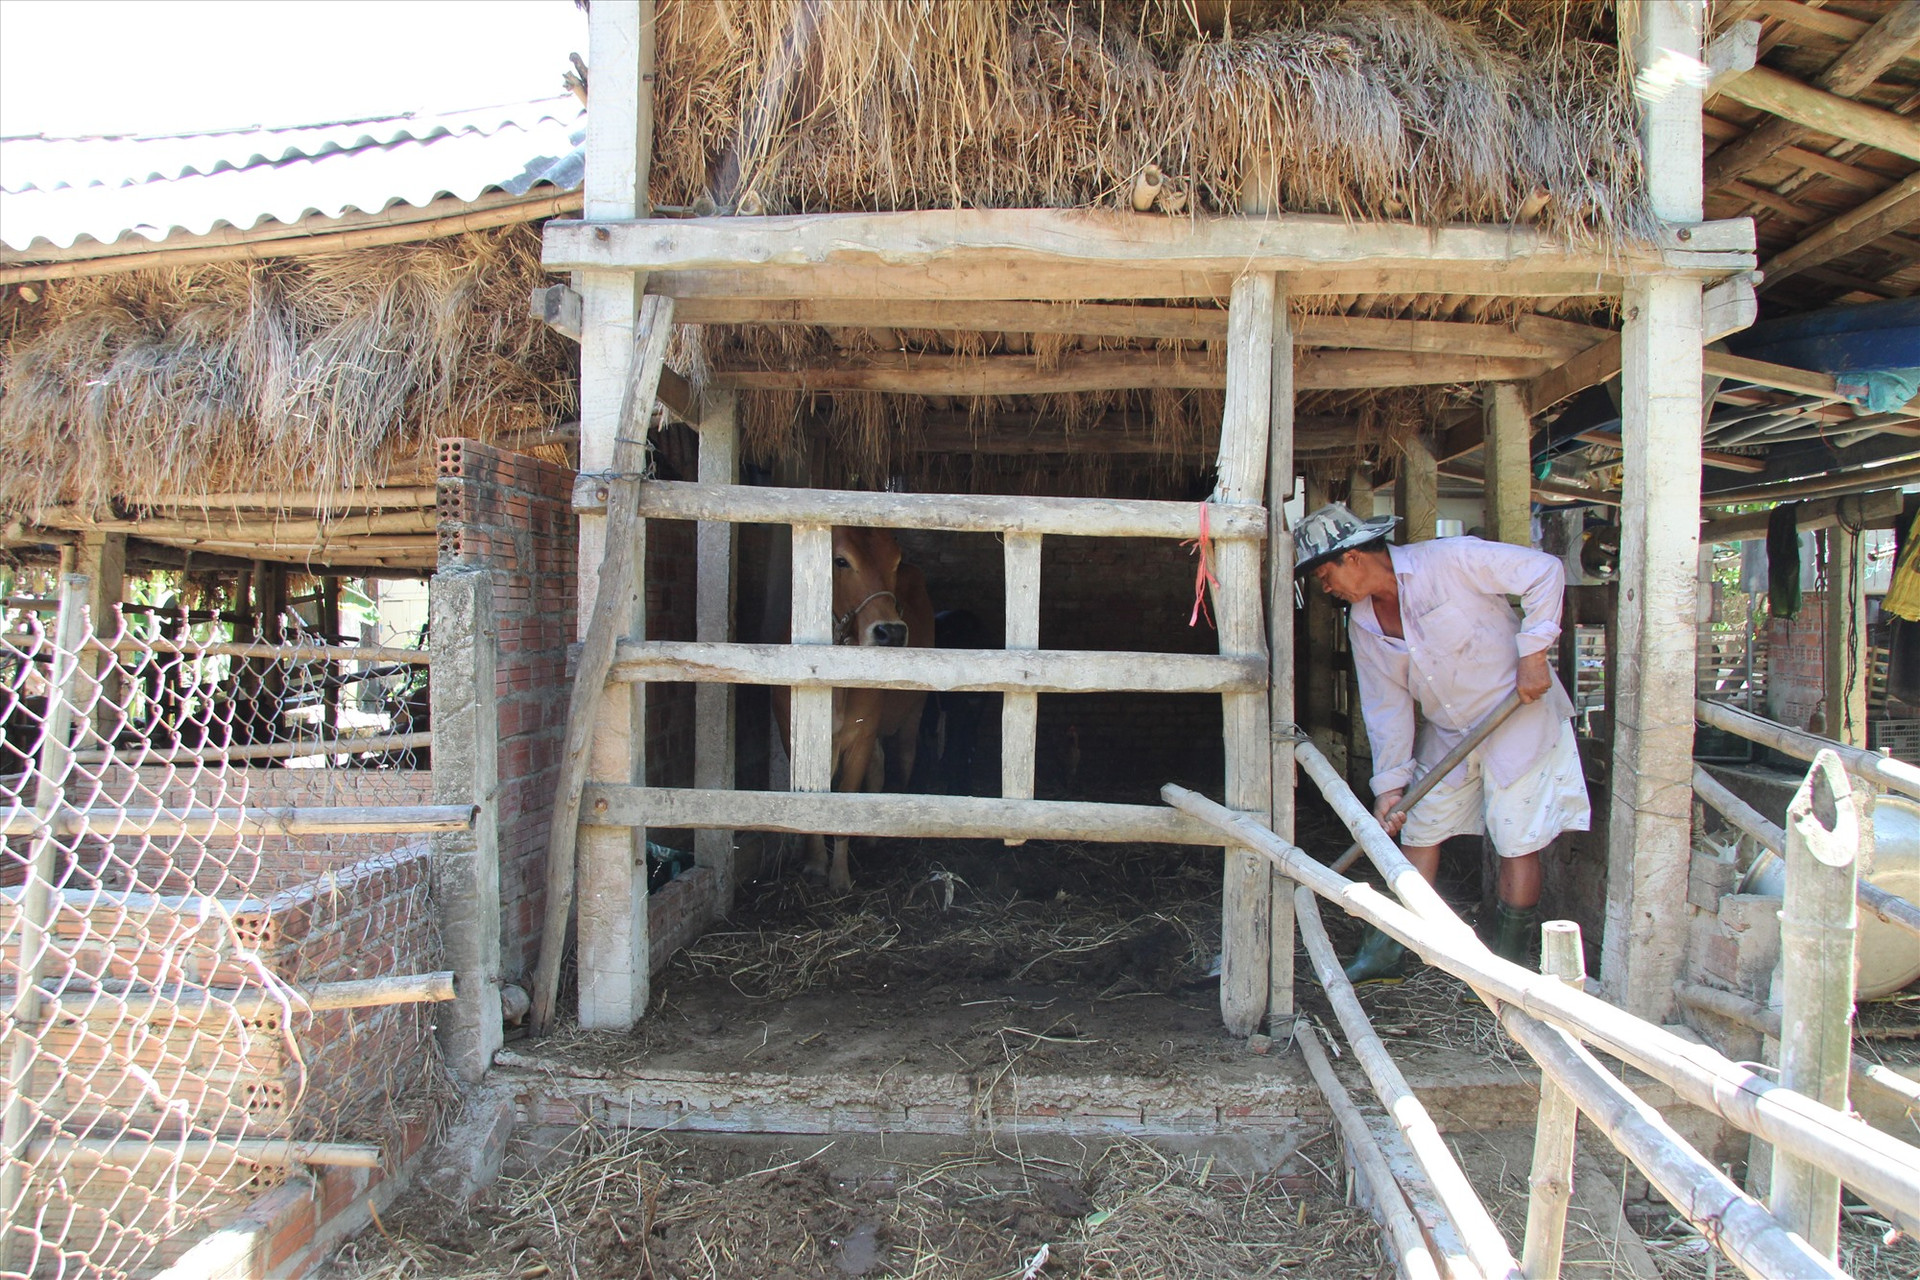 Gia đình ông Ngô Văn Chức đầu tư xây lắp bể bioga để đảm bảo vệ sinh trong chăn nuôi. Ảnh: H.Q